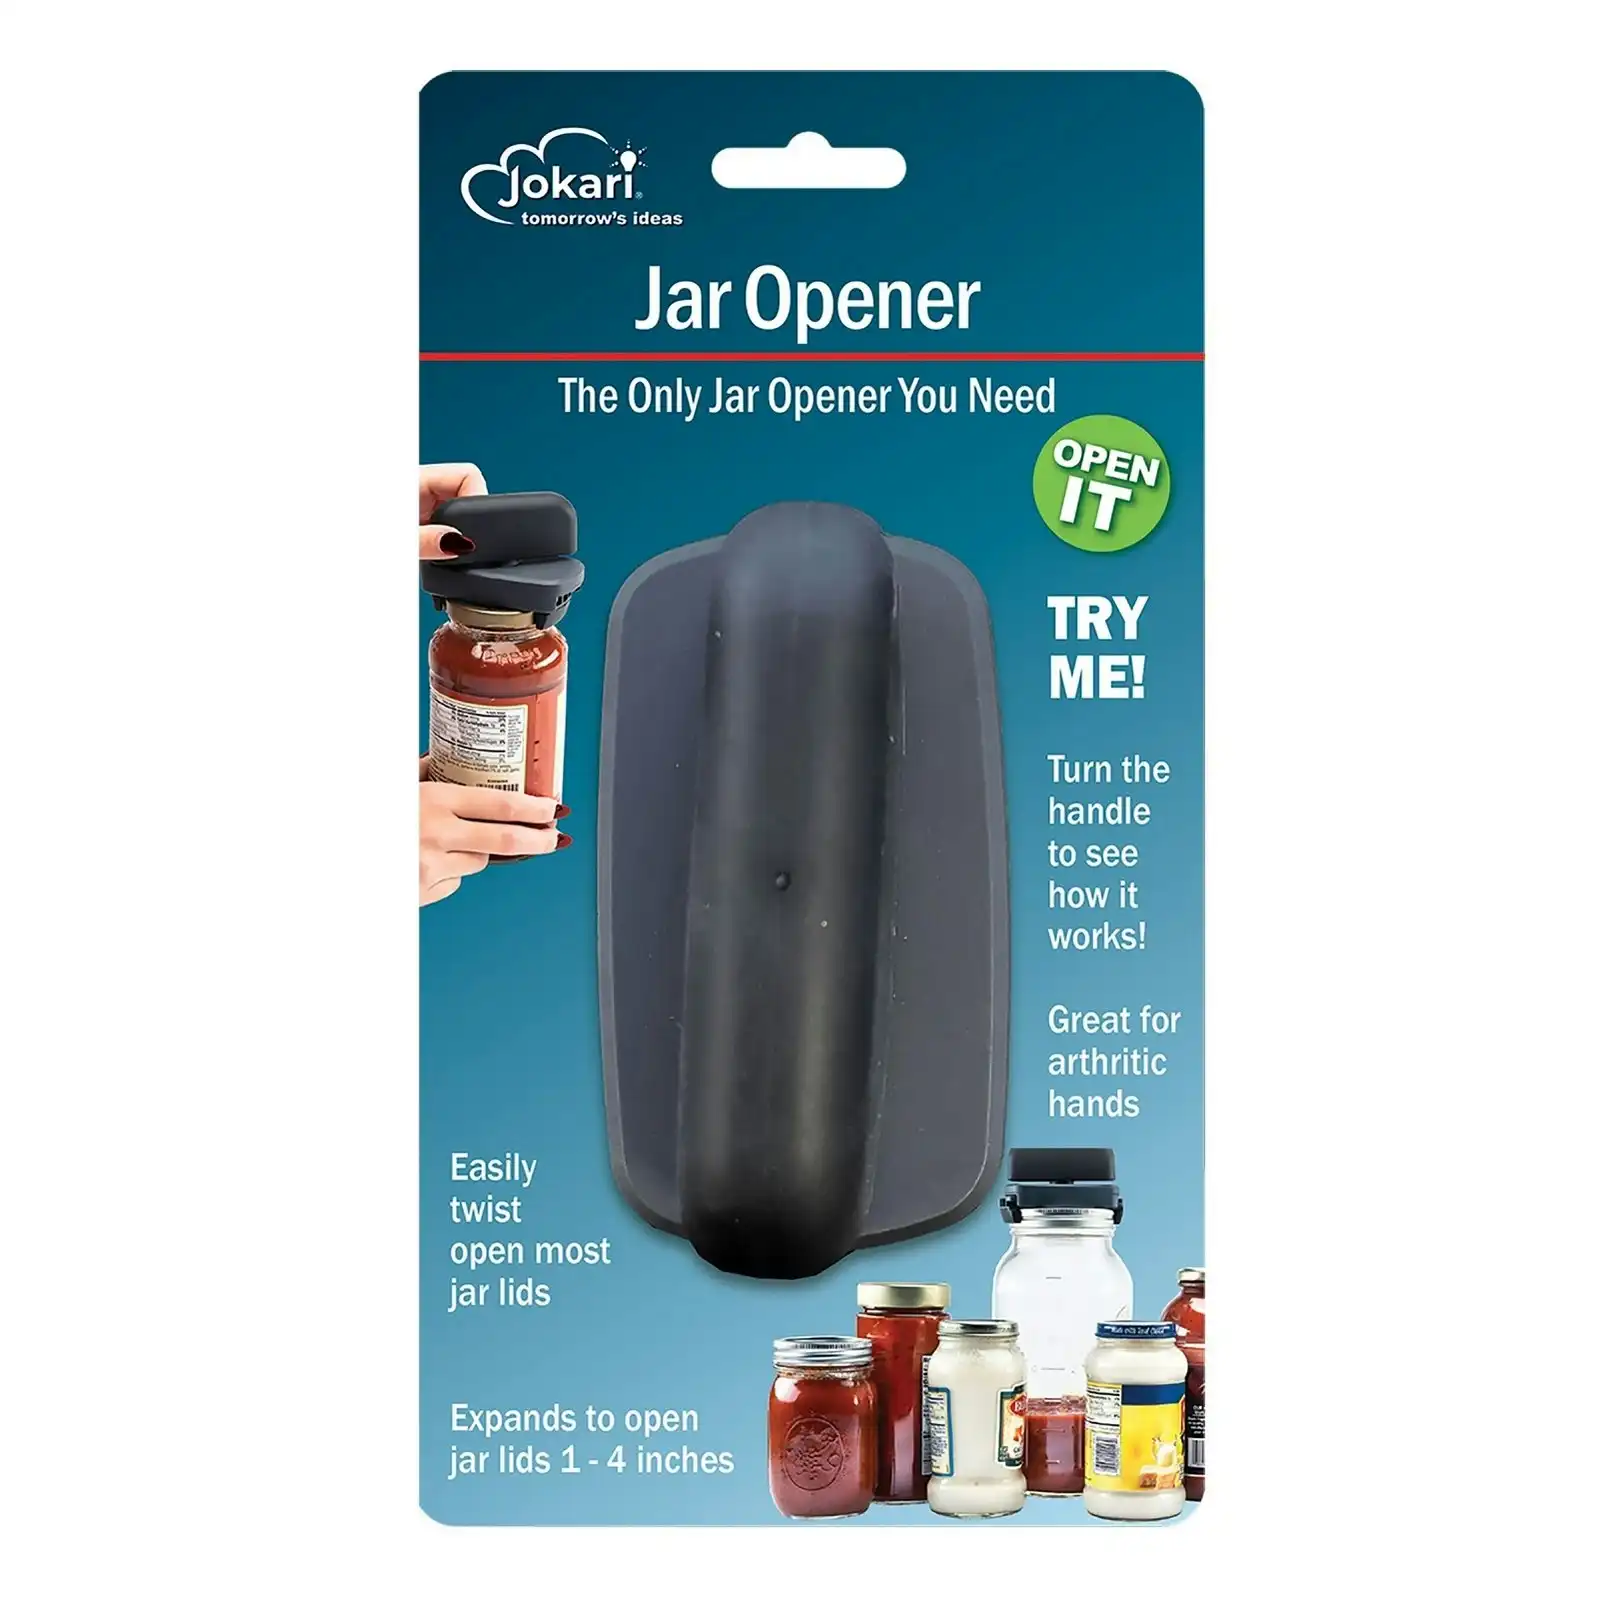 Jokari Jar Opener